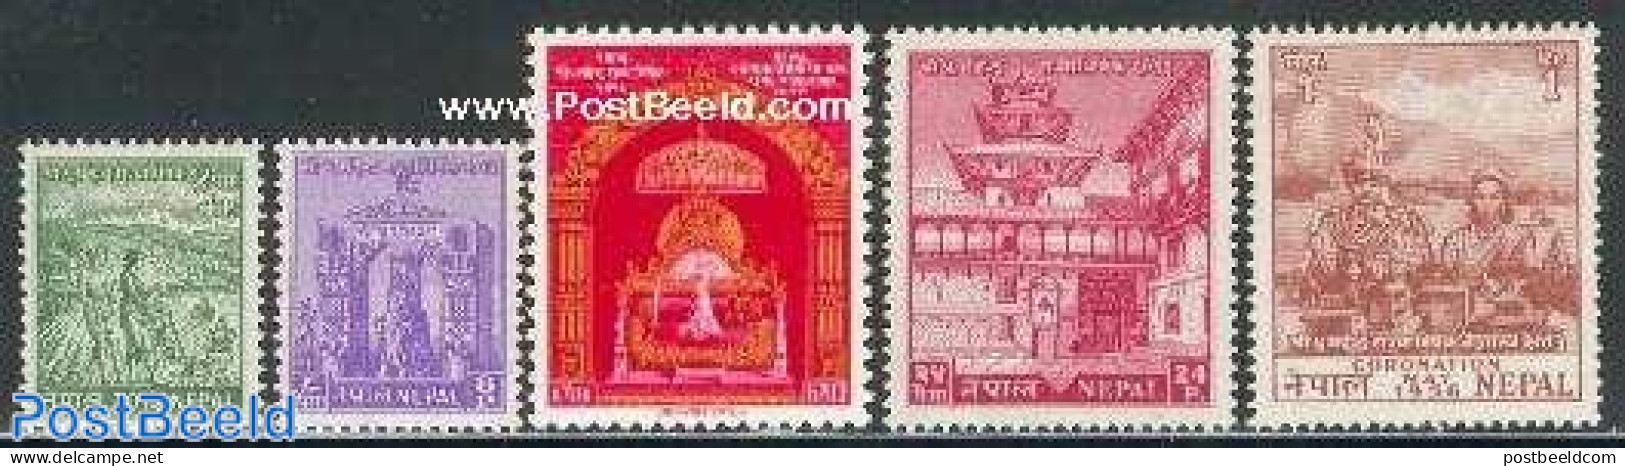 Nepal 1956 Coronation 5v, Mint NH, History - Kings & Queens (Royalty) - Königshäuser, Adel